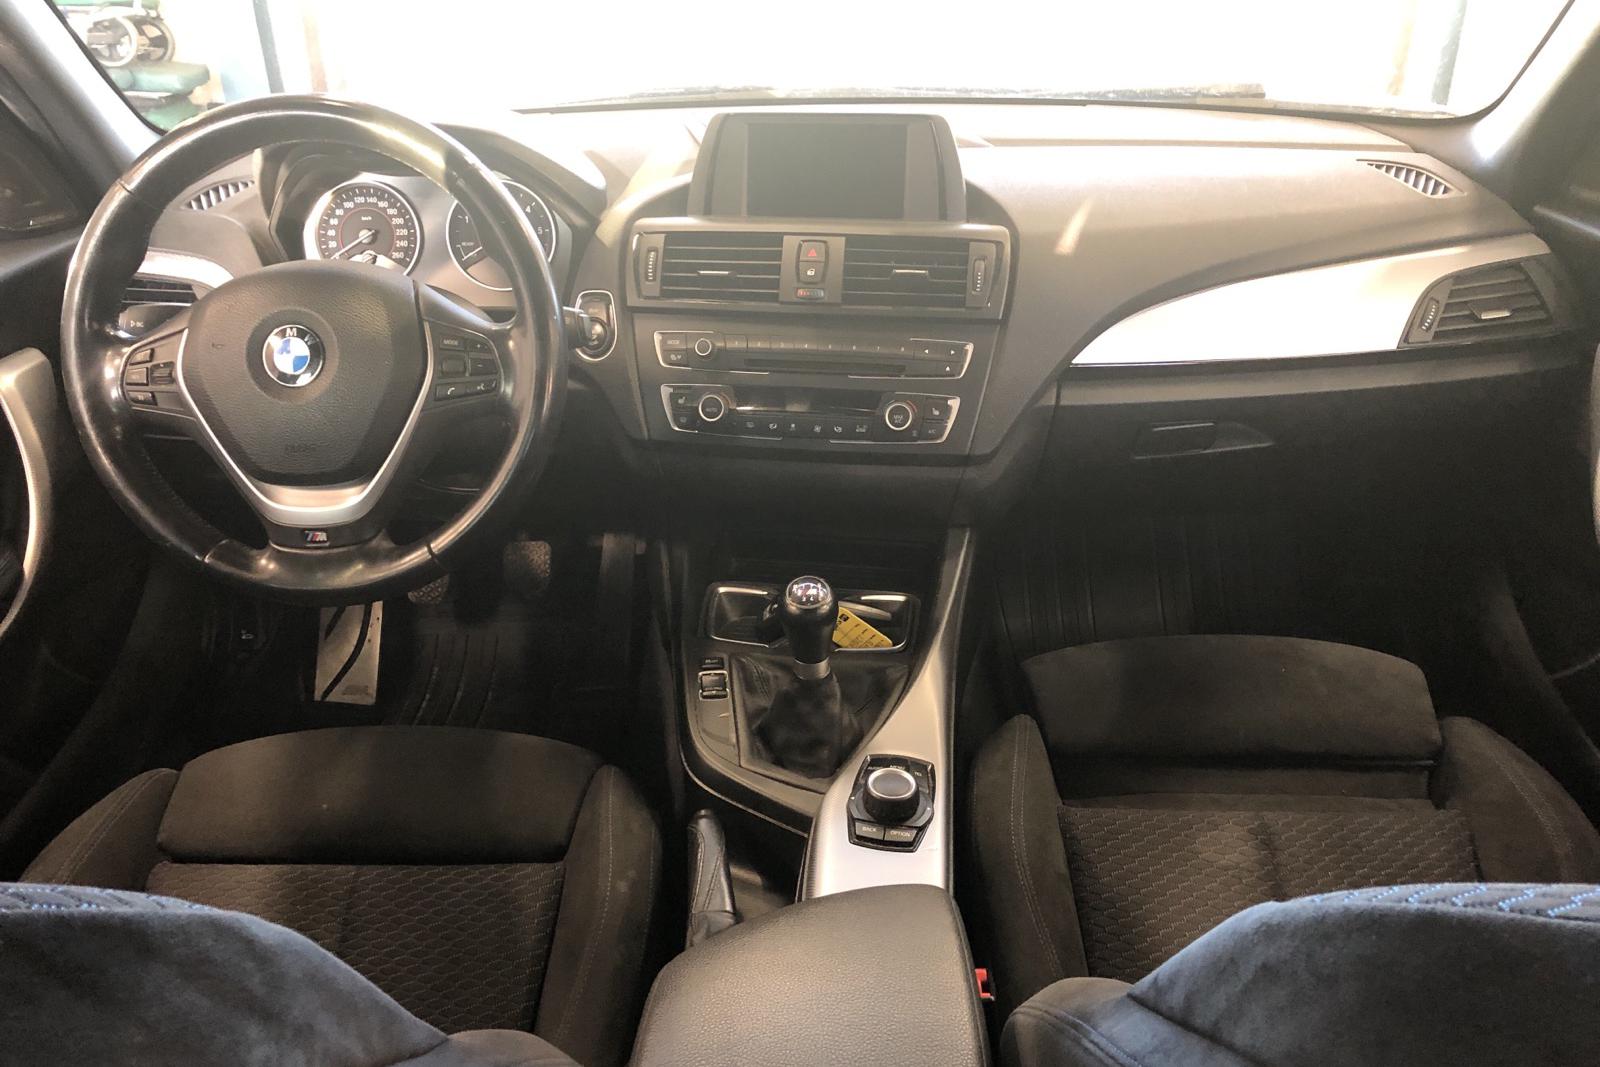 BMW 120d xDrive 5dr, F20 (184hk) - 214 750 km - Manual - gray - 2013